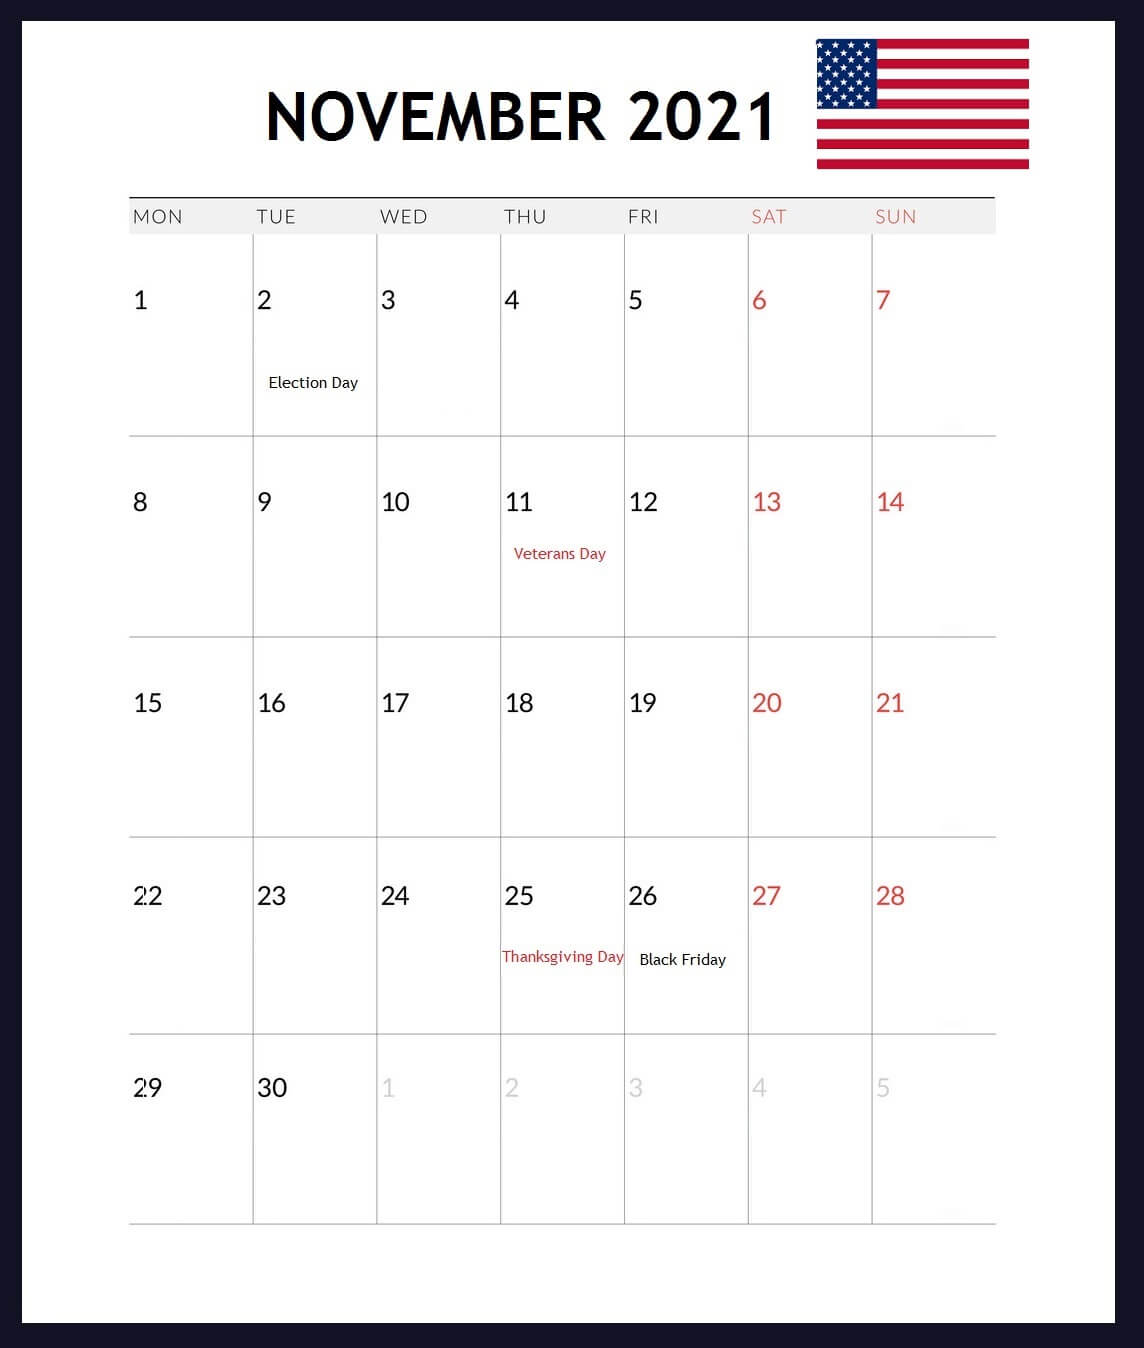 USA Holidays Calendar November 2021